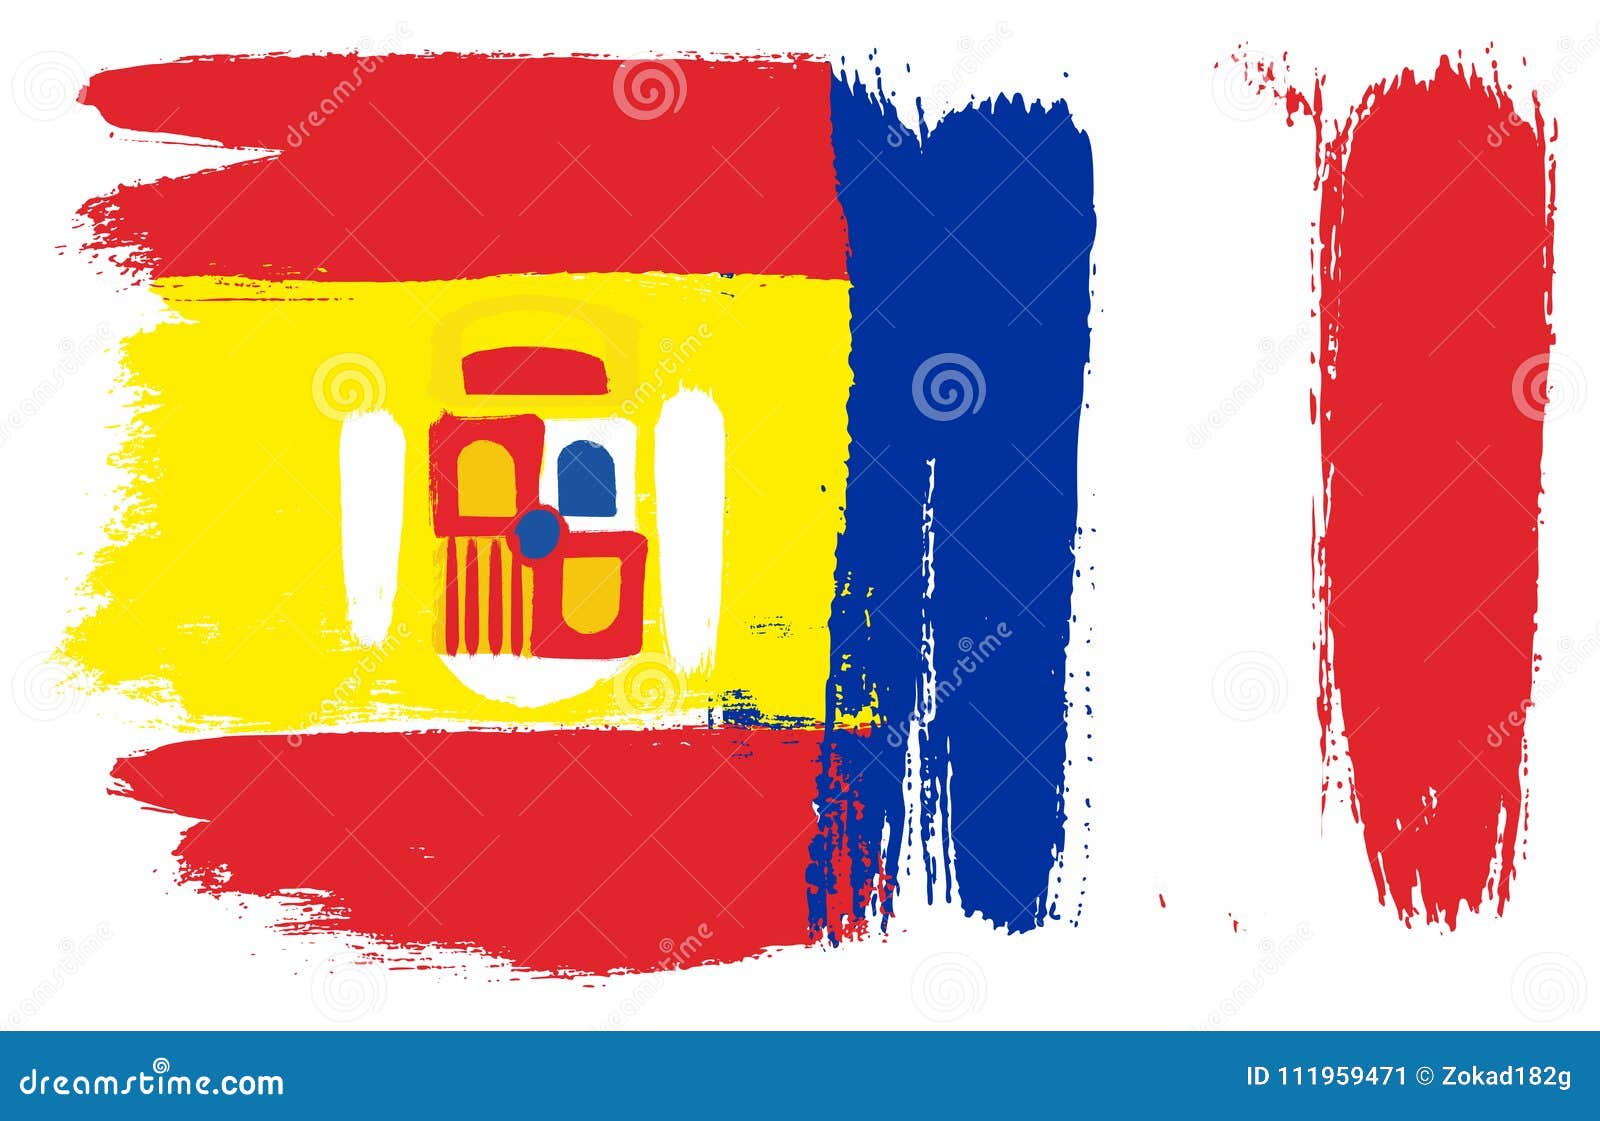 conceito de bandeira de portugal vs espanha. ilustração vetorial